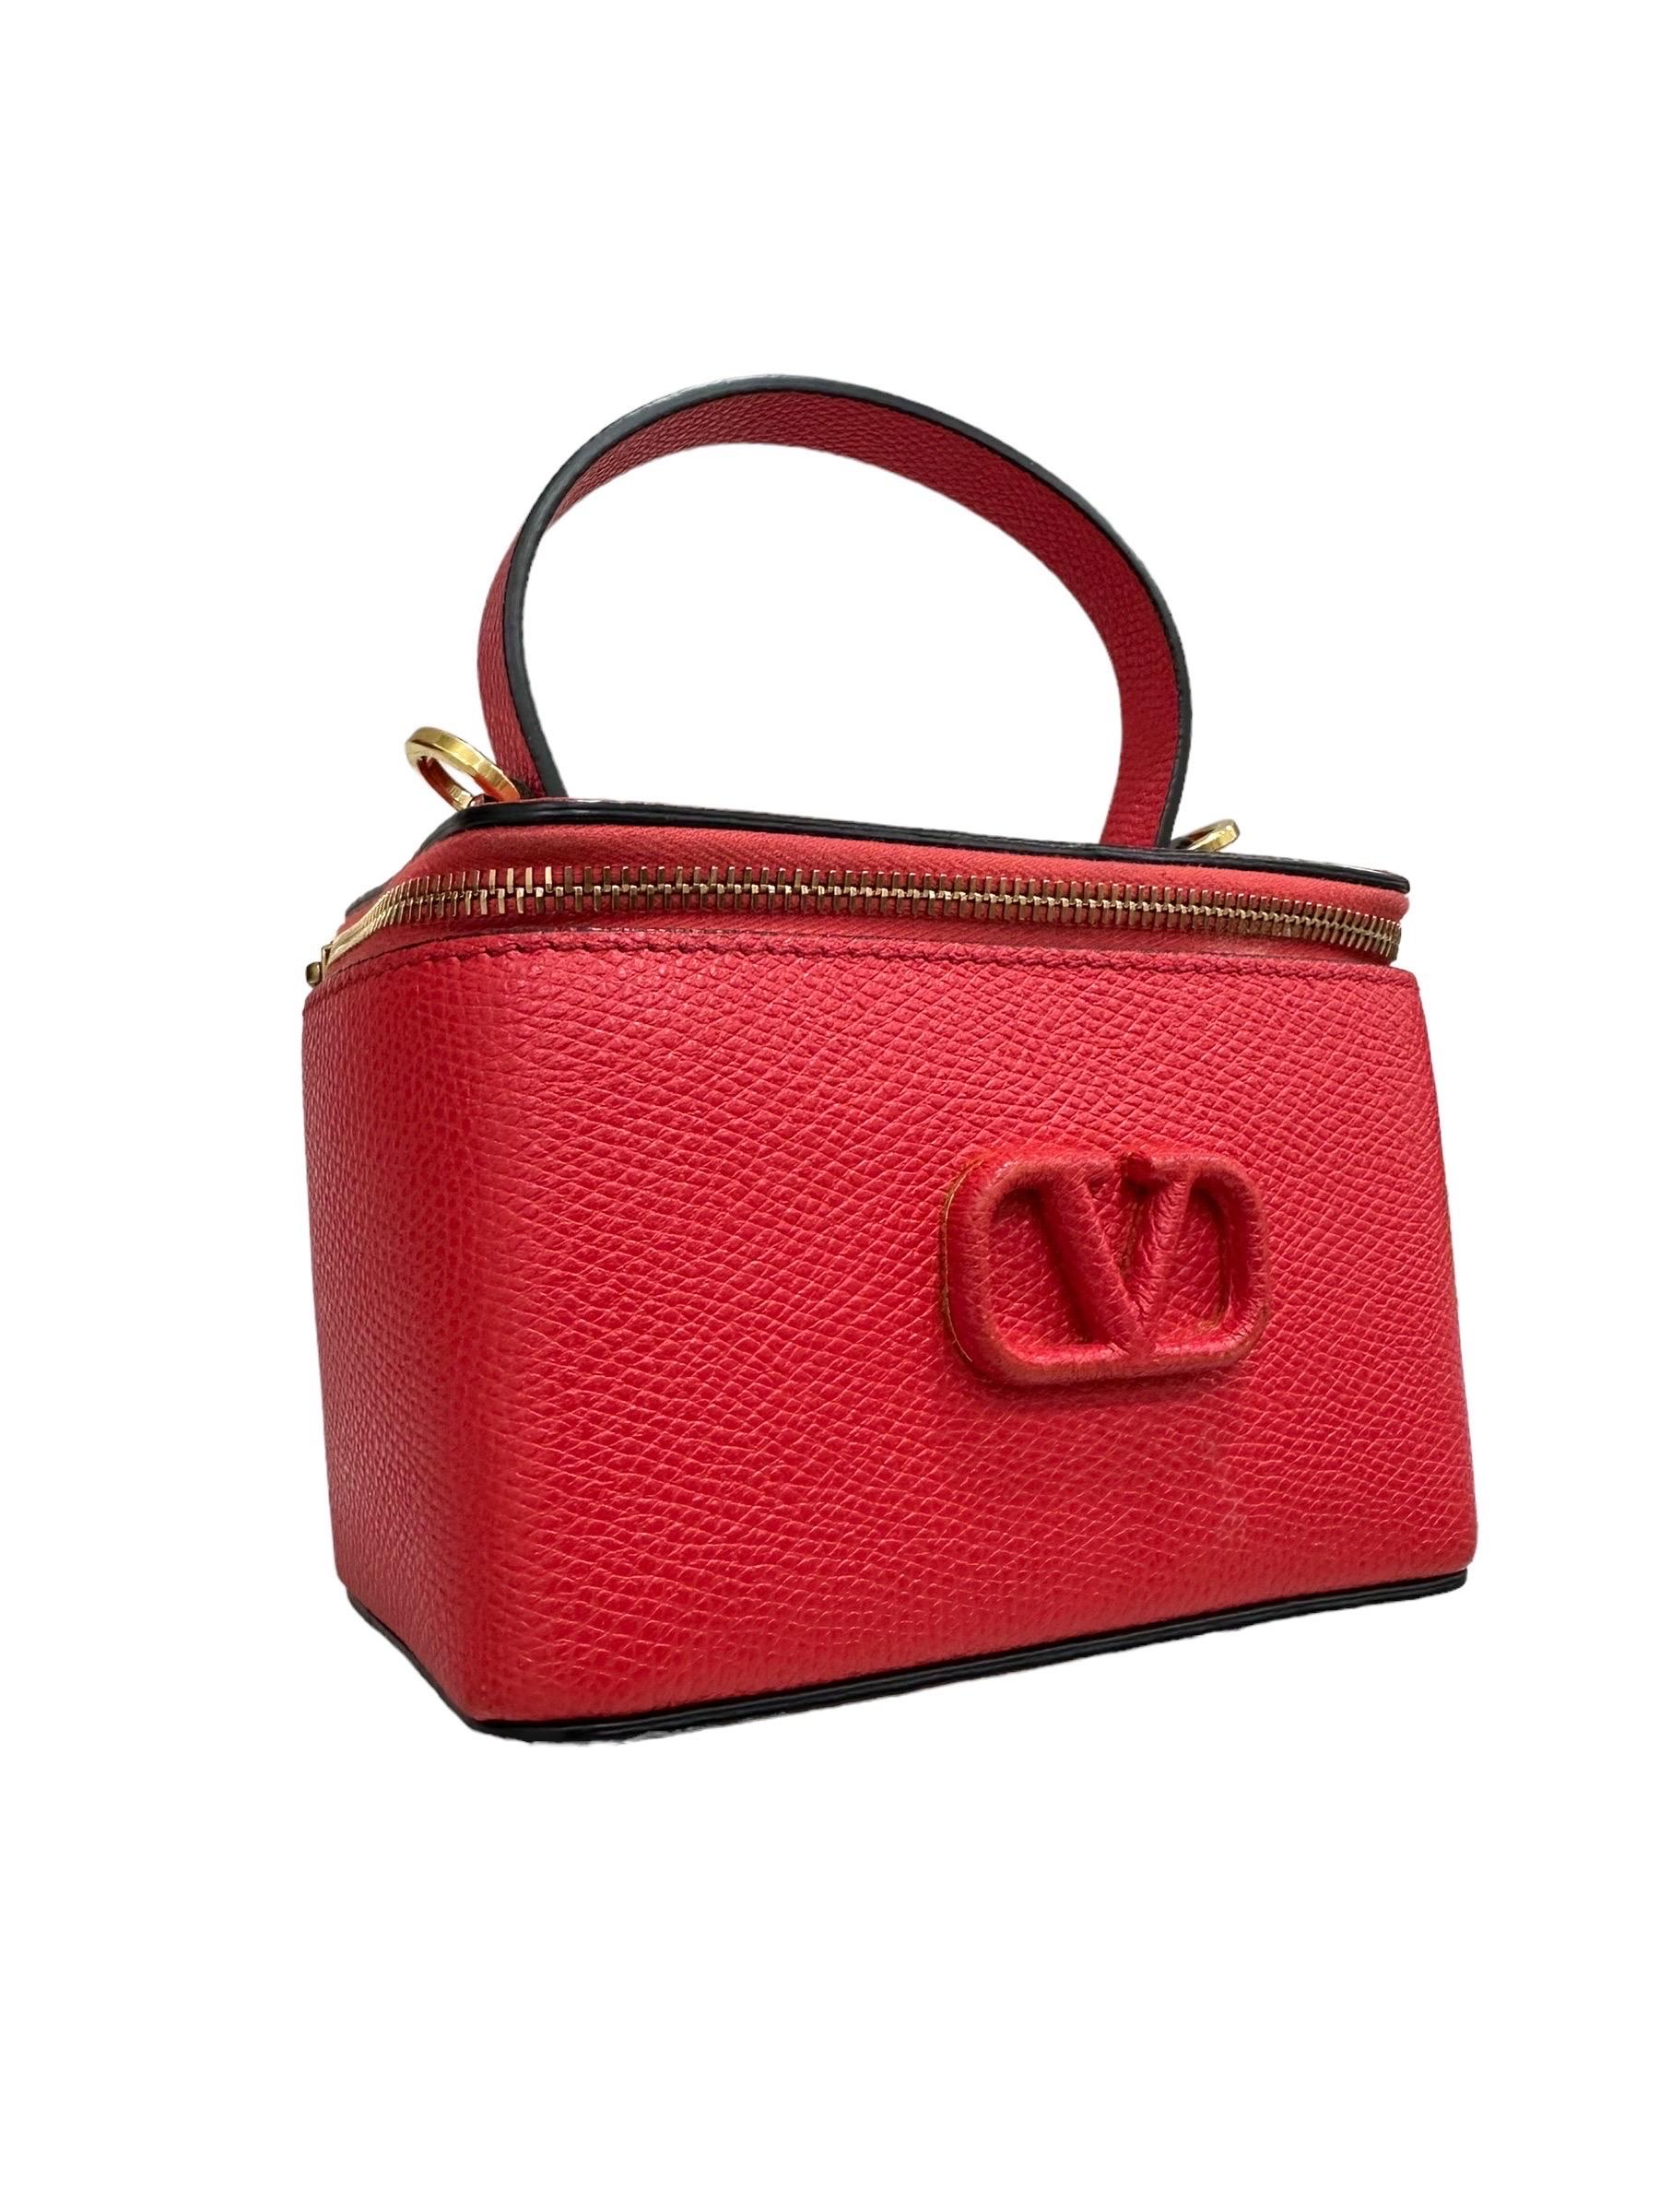 Valentino VLogo Micro Beauty Rosso Borsa a Tracolla In Excellent Condition For Sale In Torre Del Greco, IT